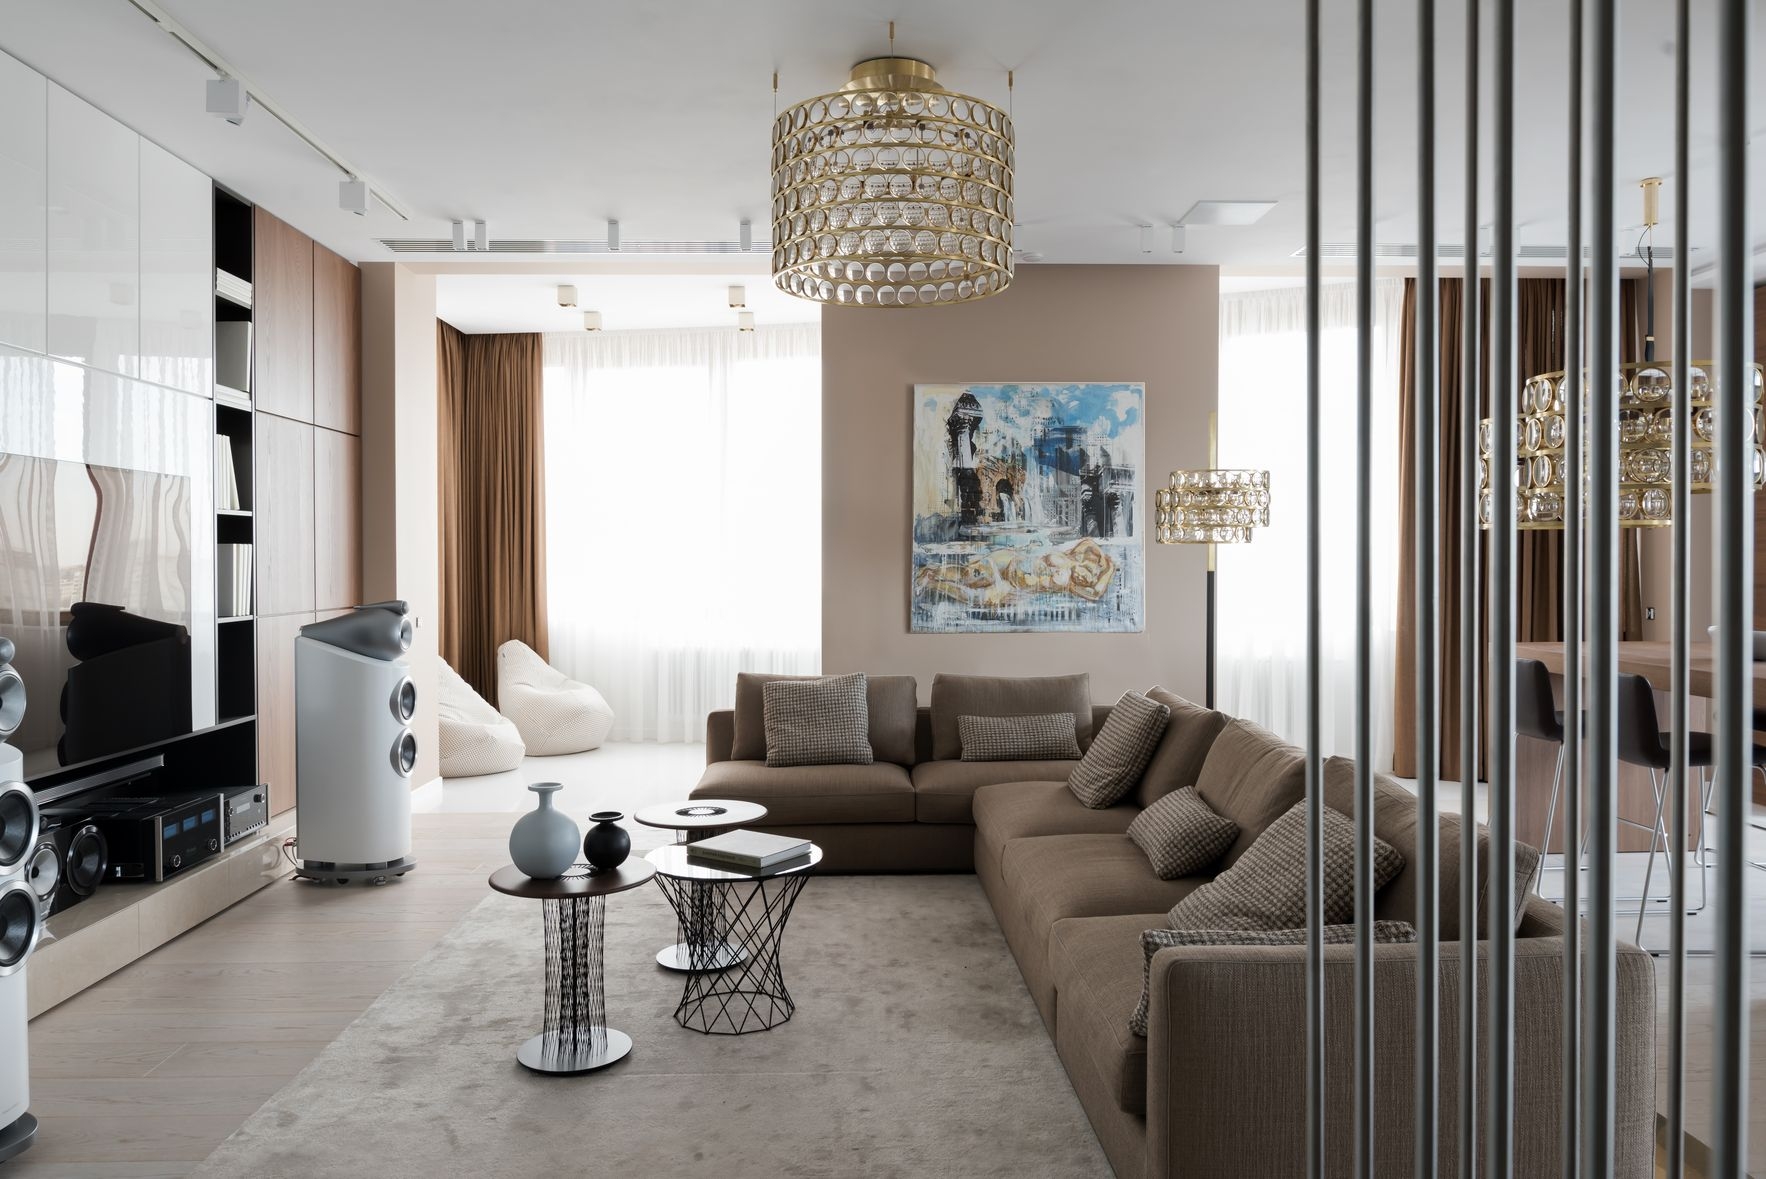 Это современный дизайн интерьера трехкомнатной квартиры студии площадью 170 кв.м.